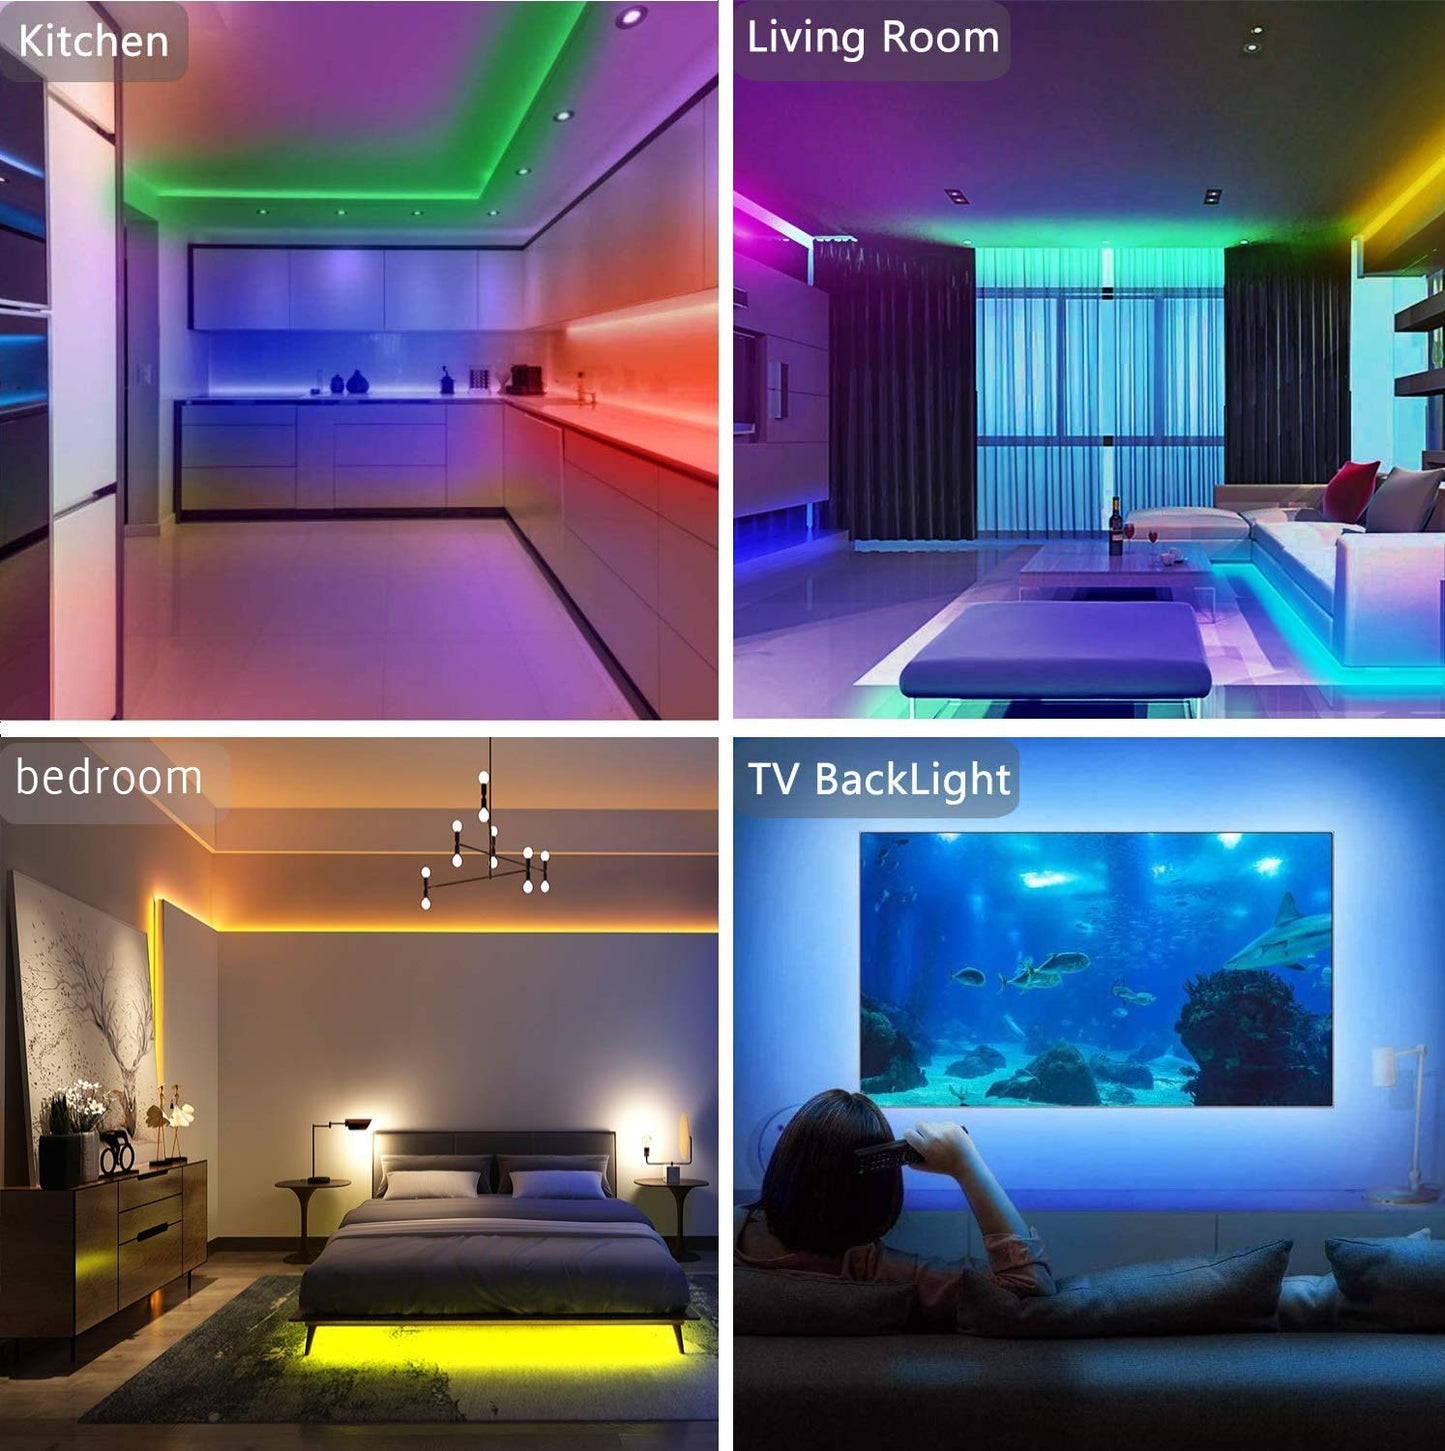 Tenmiro 65.6ft Led Stripverlichting, Ultra Lange RGB 5050 Kleurveranderende LED Lichtstrips Kit met 44 Toetsen IR Afstandsbediening, Led-verlichting voor Slaapkamer, Keuken, Huisdecoratie